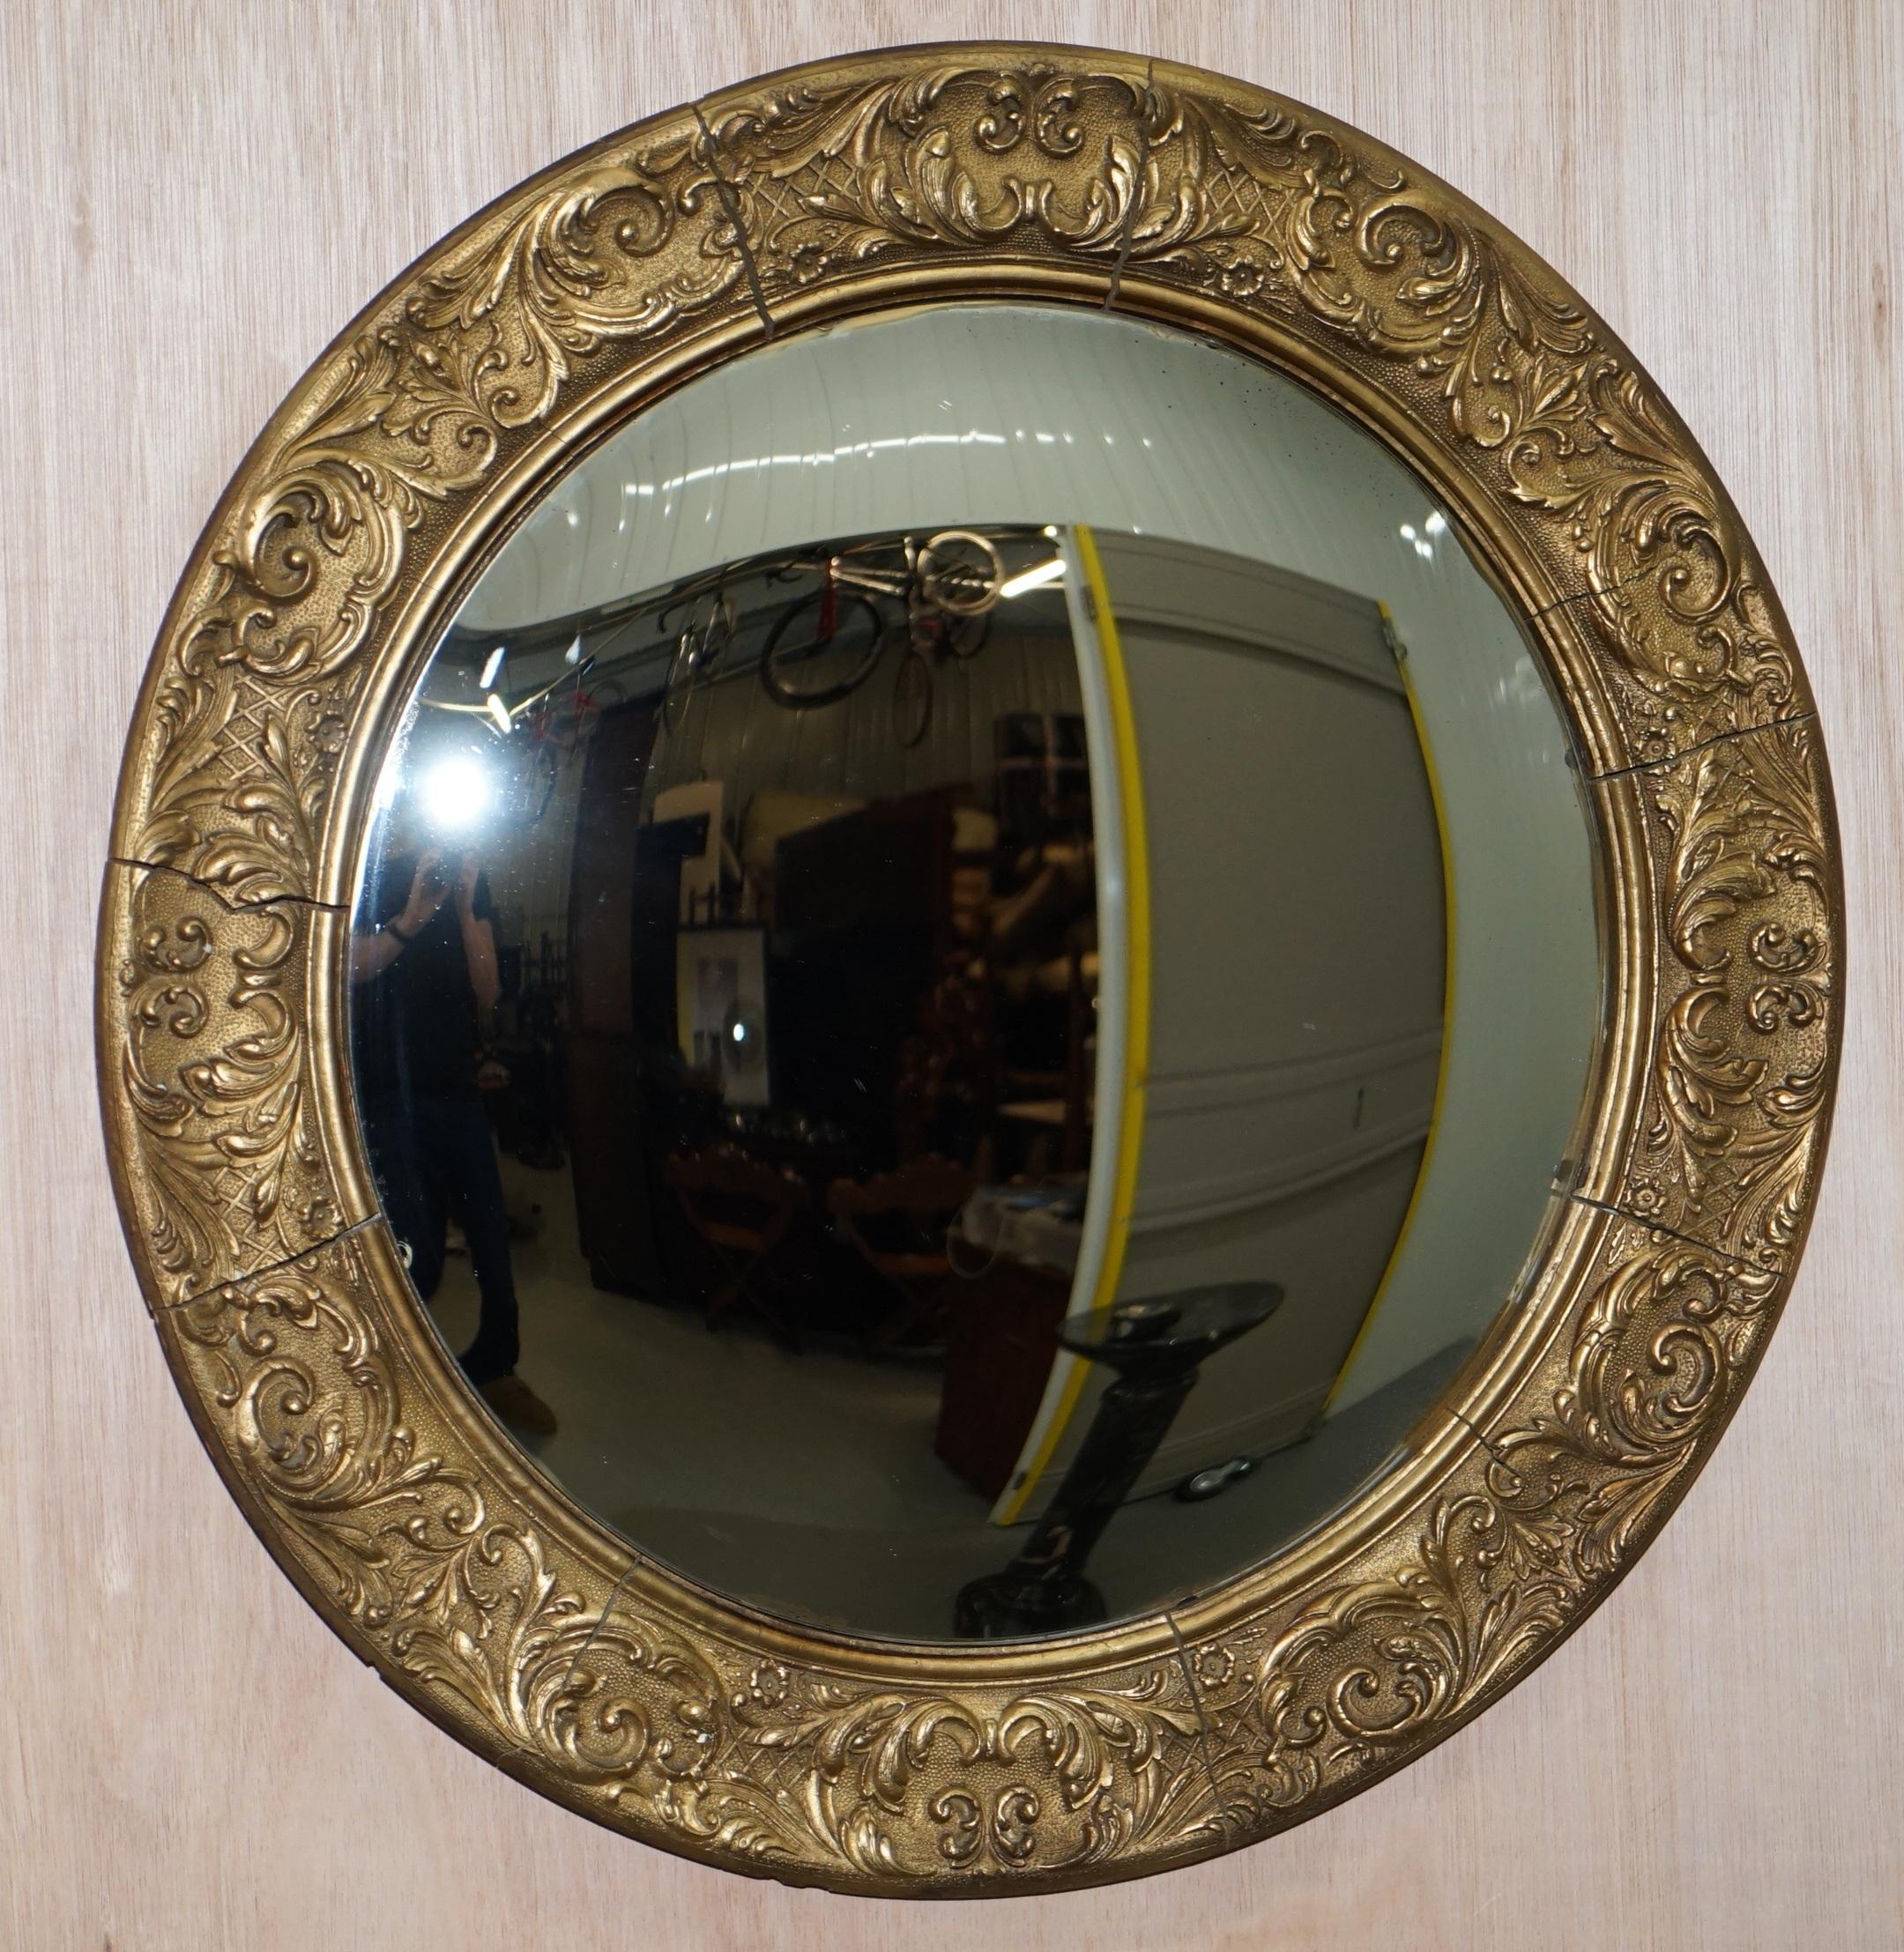 Wimbledon-Mobilier

Wimbledon-Furniture a le plaisir d'offrir à la vente ce très beau miroir convexe en bois doré français réalisé dans le style nautique de la Régence

Veuillez noter que les frais de livraison indiqués ne sont qu'indicatifs et